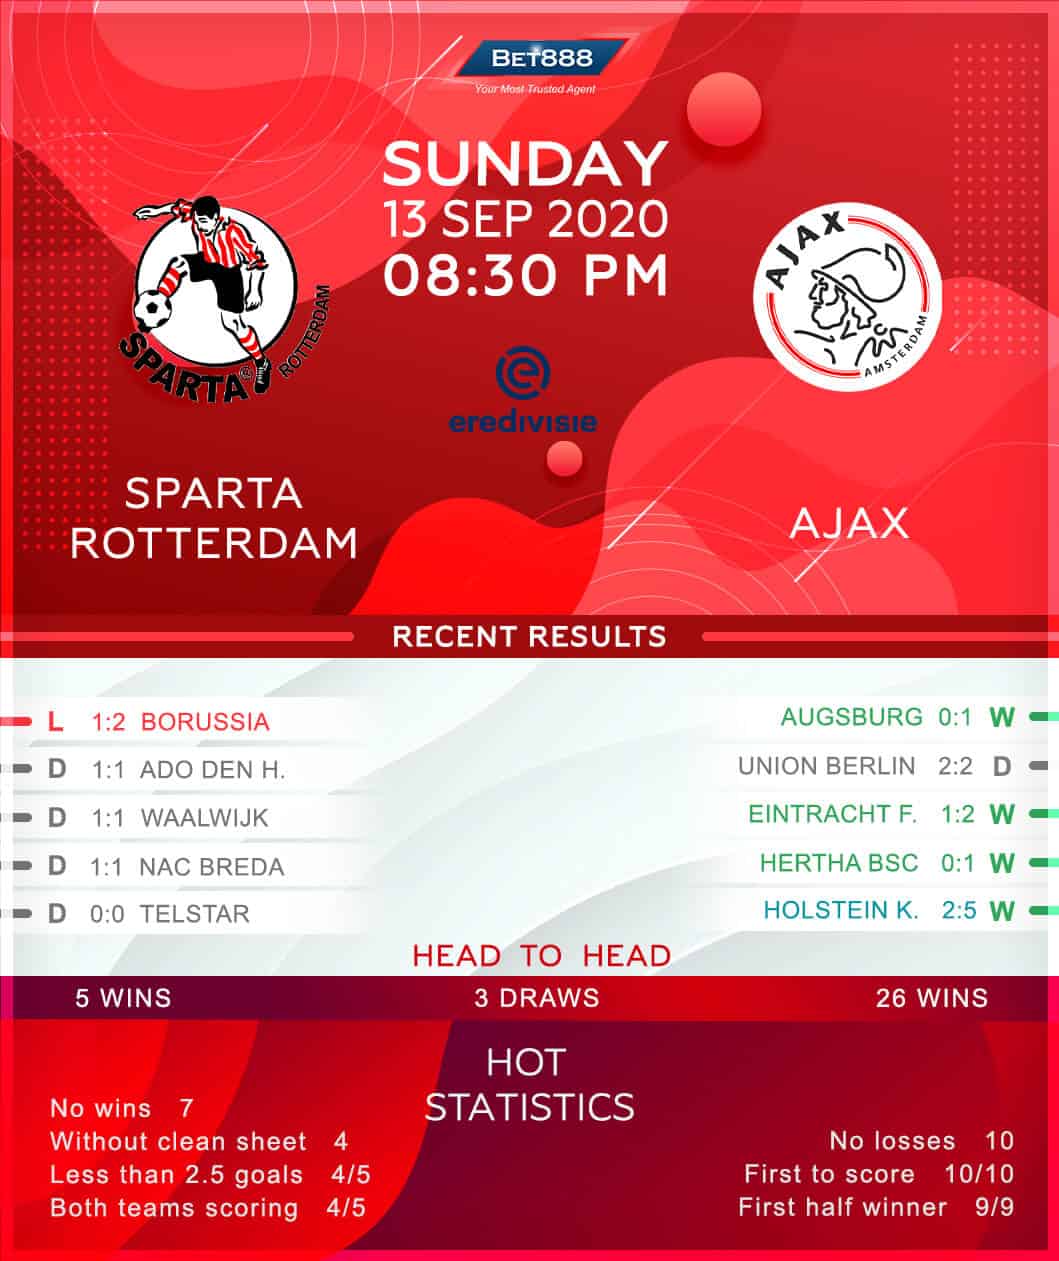 Sparta Rotterdam vs Ajax 13/09/20